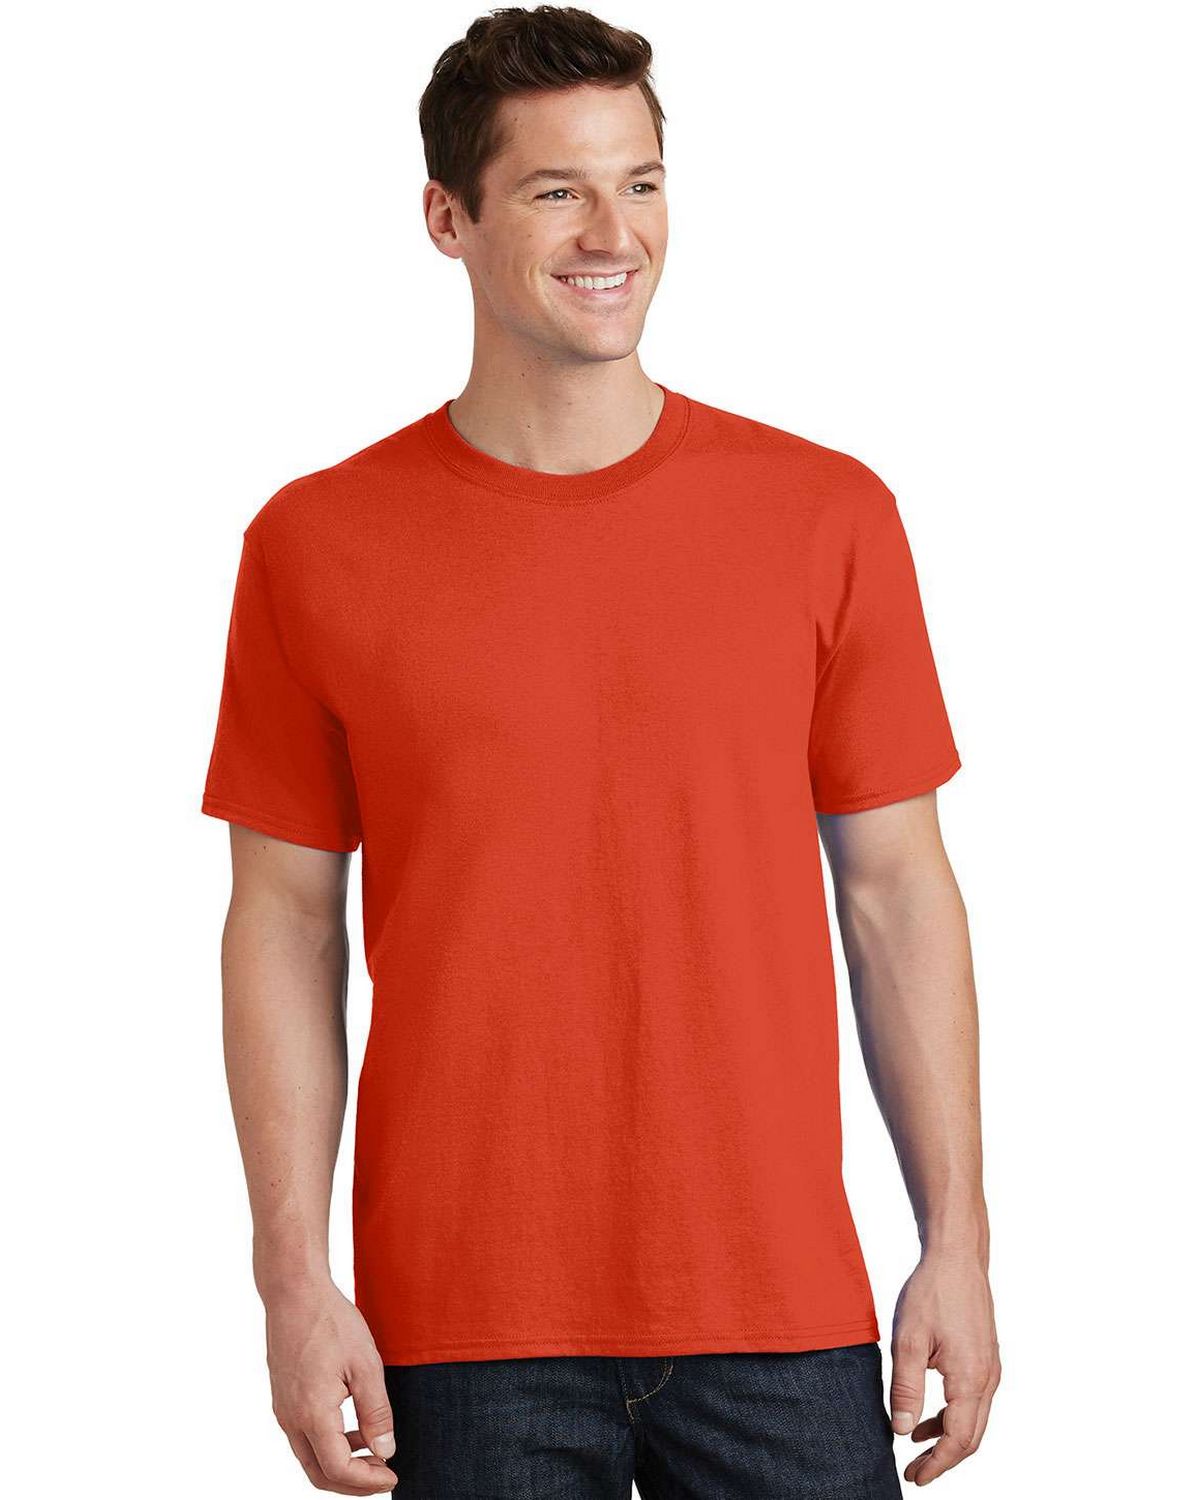 Port & Company PC54 100% Cotton T-Shirt - ApparelnBags.com